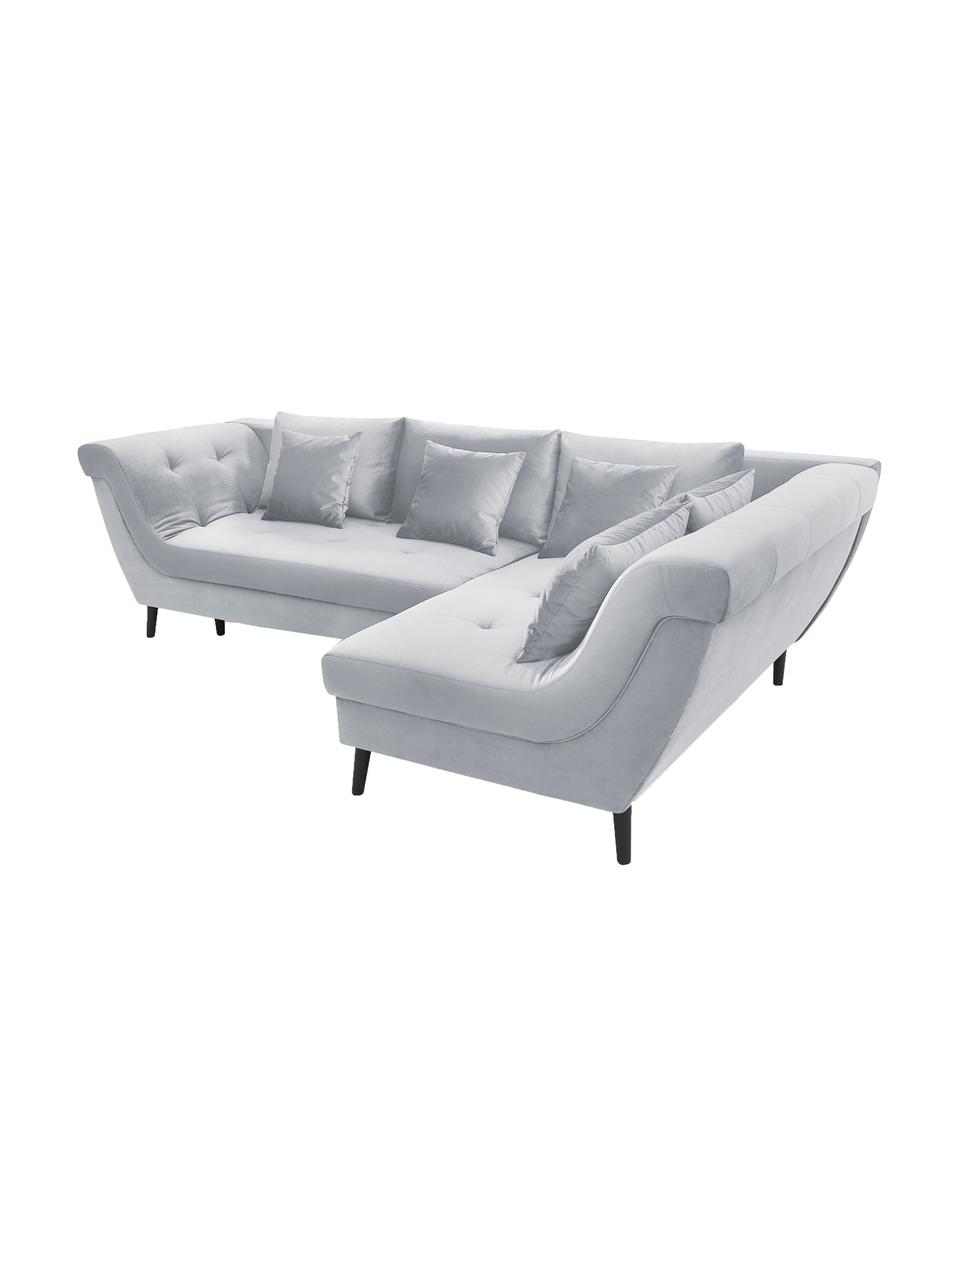 Sofa narożna z funkcją spania z aksamitu Real, Tapicerka: 100% aksamit poliestrowy, Nogi: metal lakierowany, Jasny szary, S 296 x G 172 cm